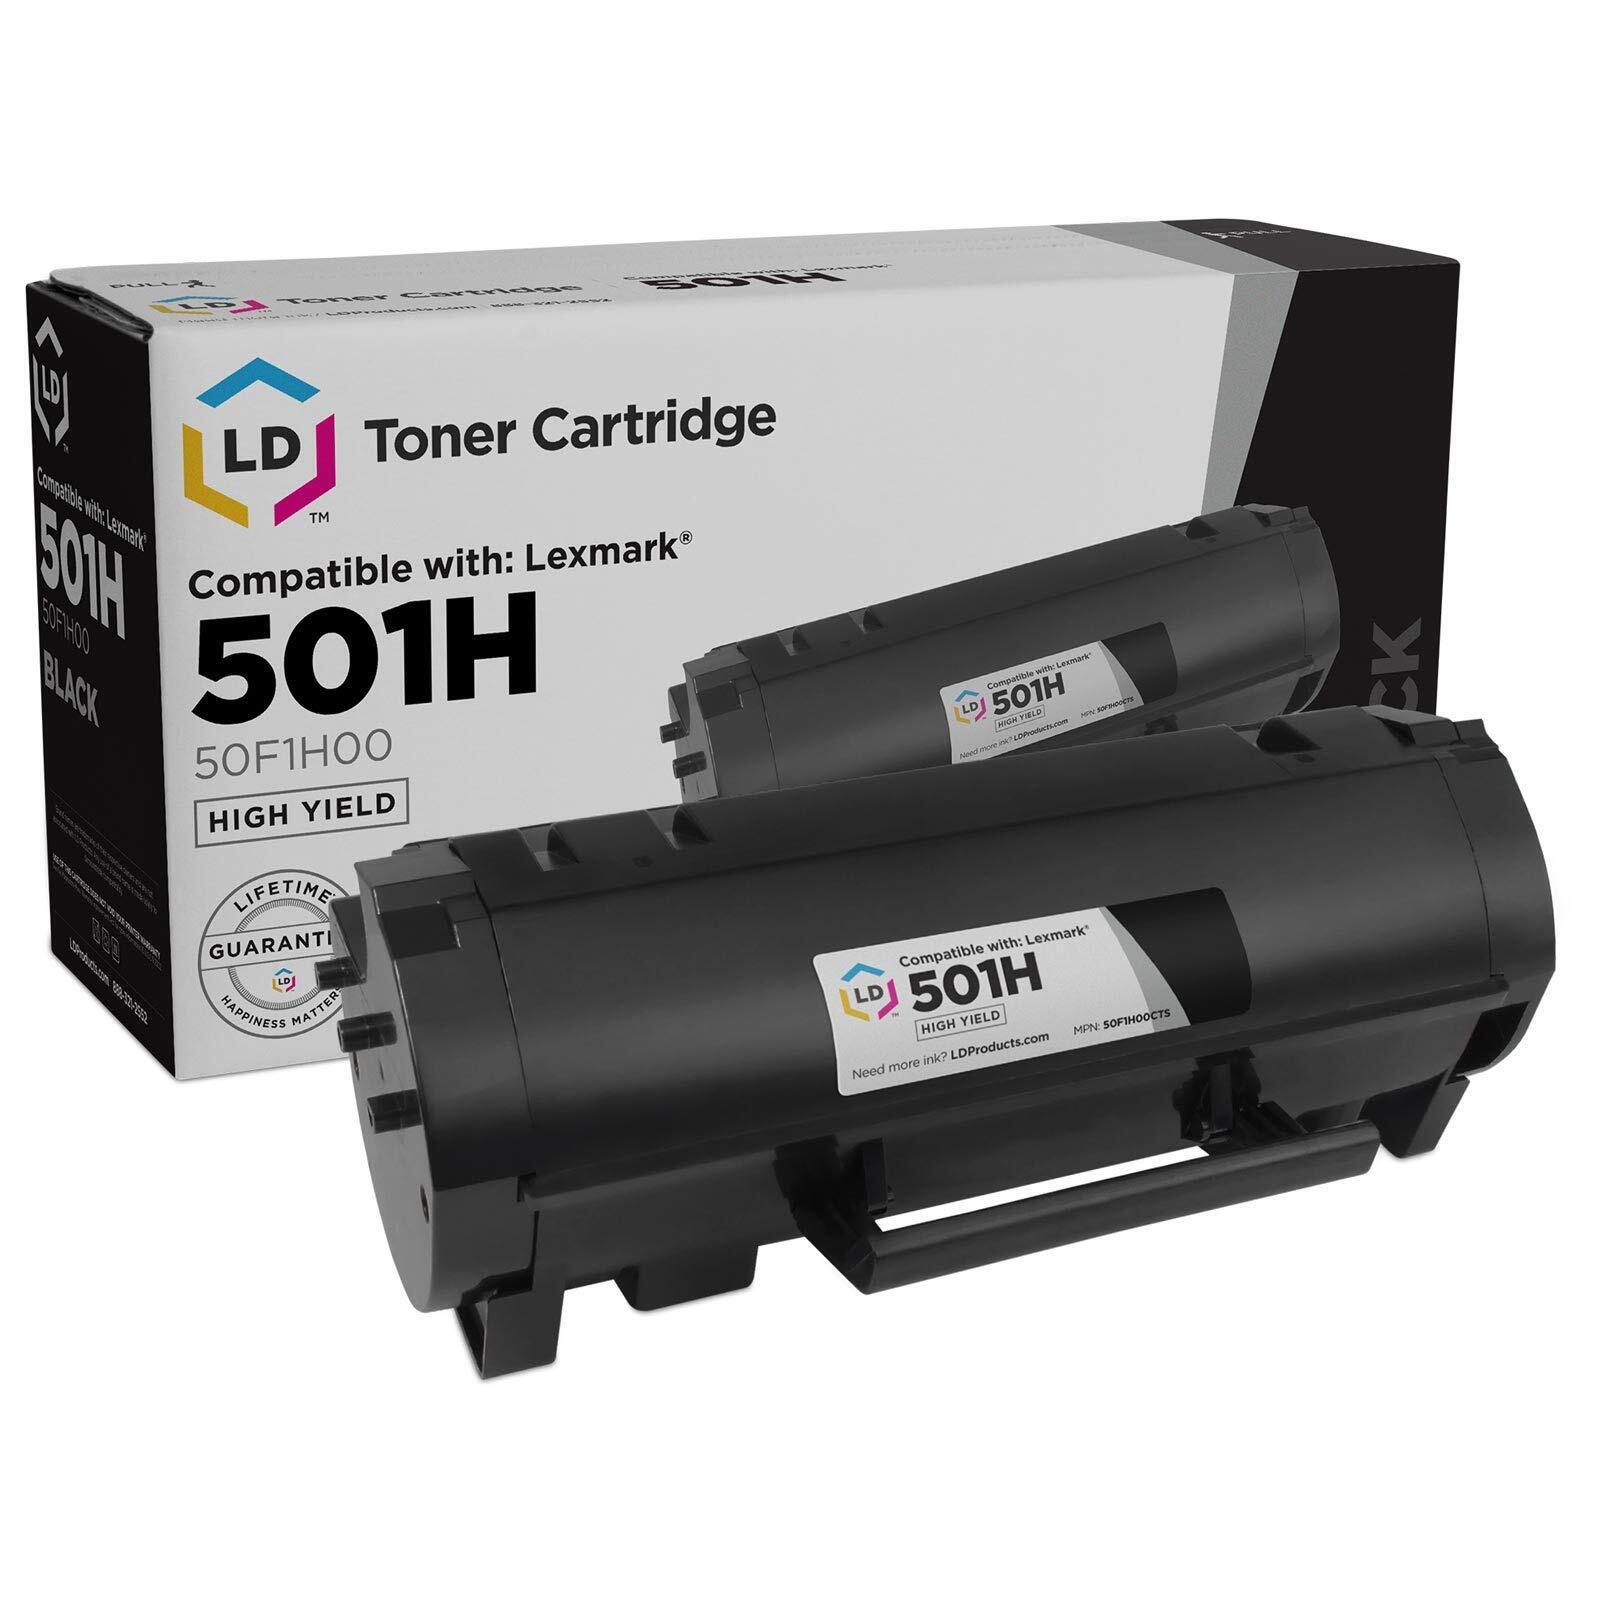 LD 50F1H00 501H Black Laser Toner Cartridge for Lexmark Printer